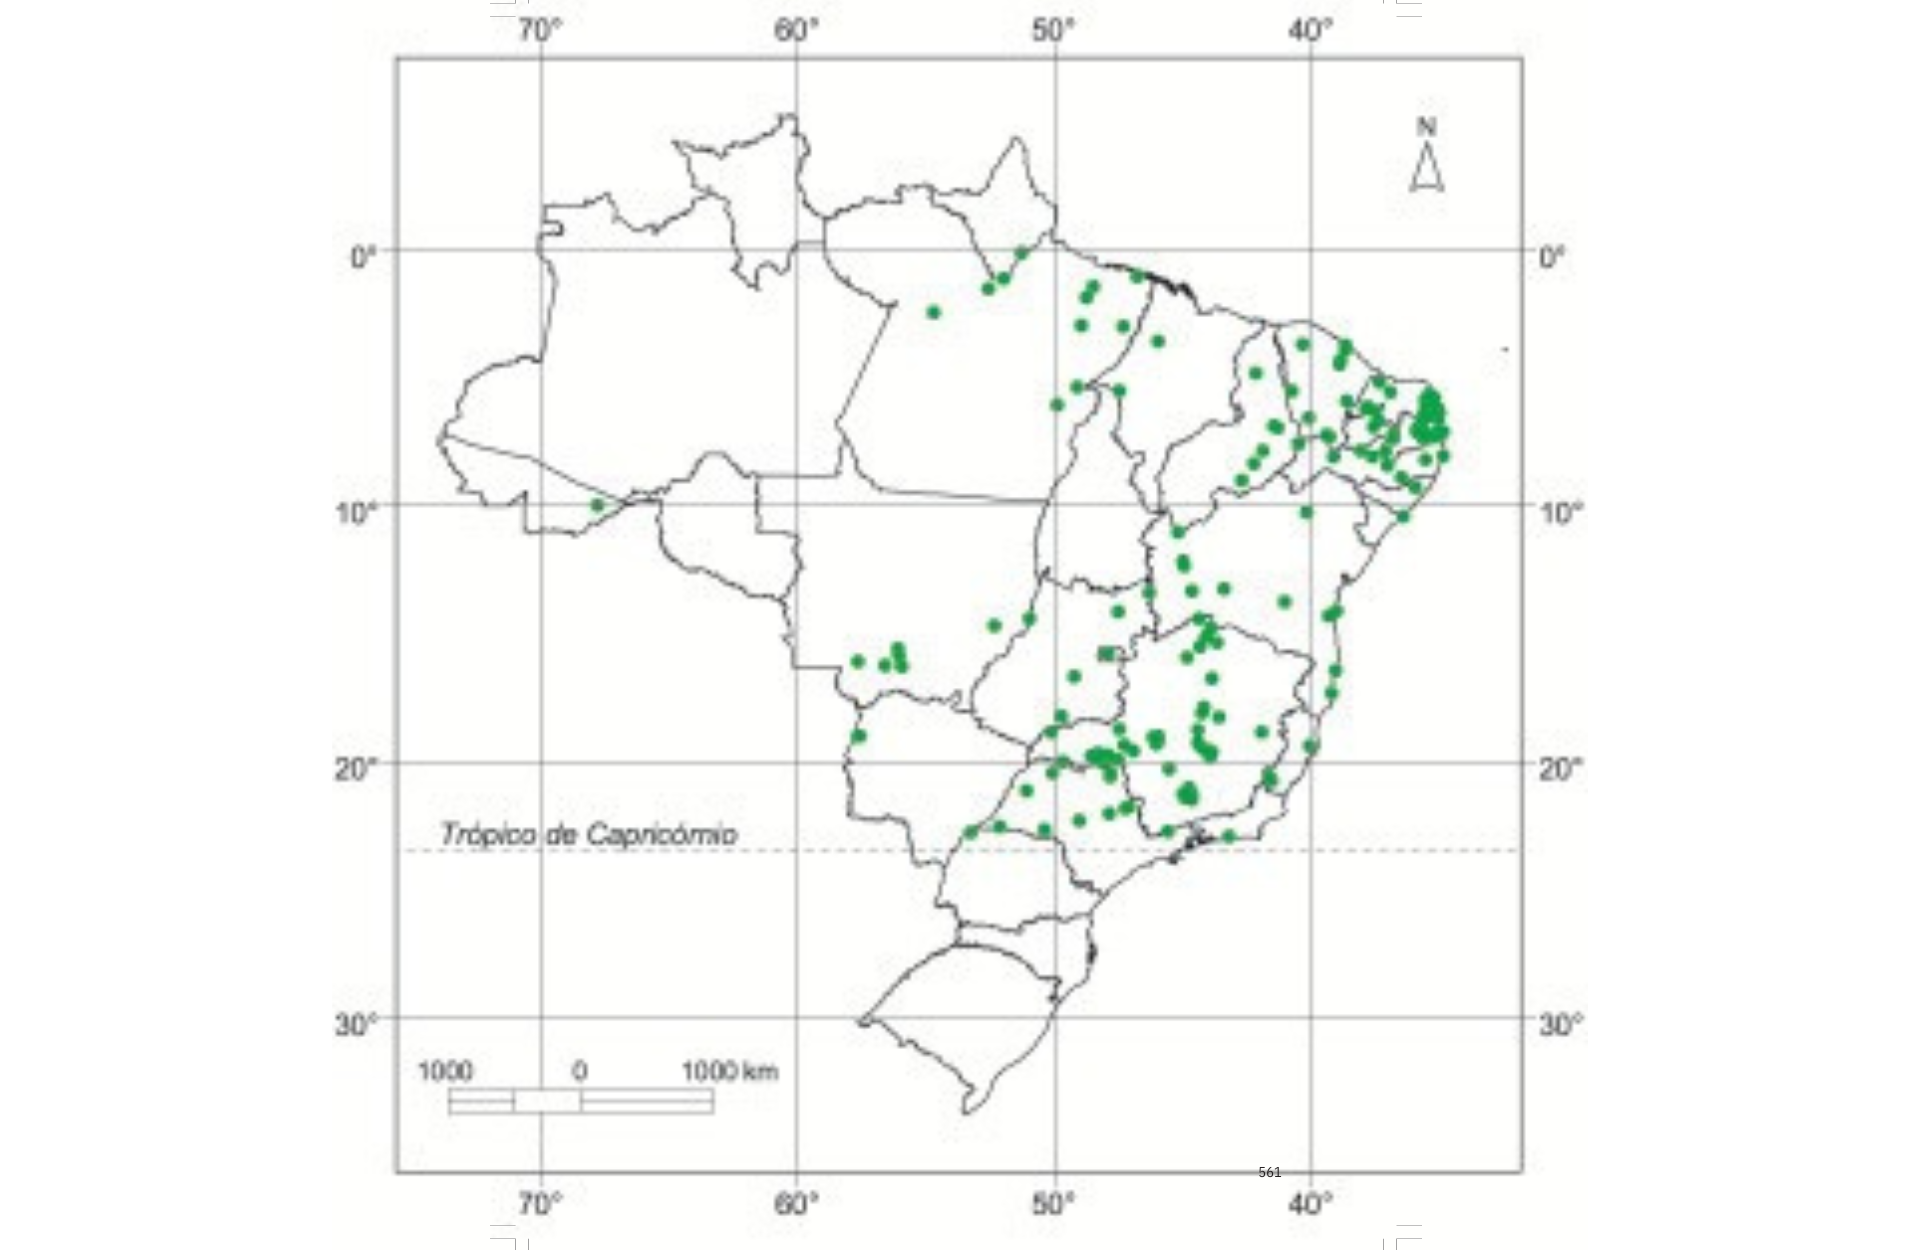 Locais identificados de ocorrência natural de ipê-rosa (Tabebuia impetiginosa), no Brasil.